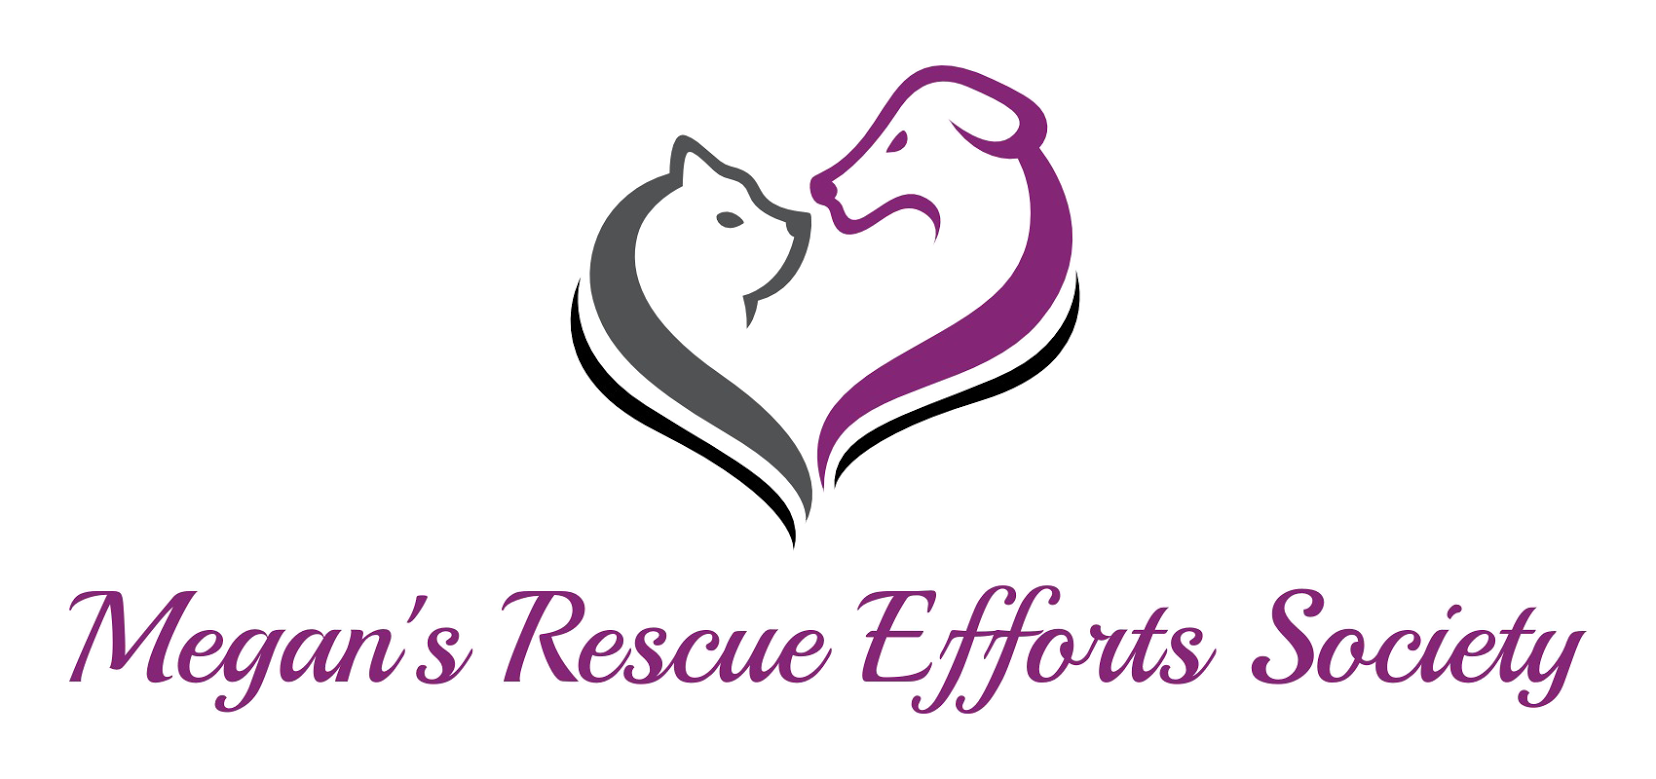 Megan's Rescue Efforts Society Logo